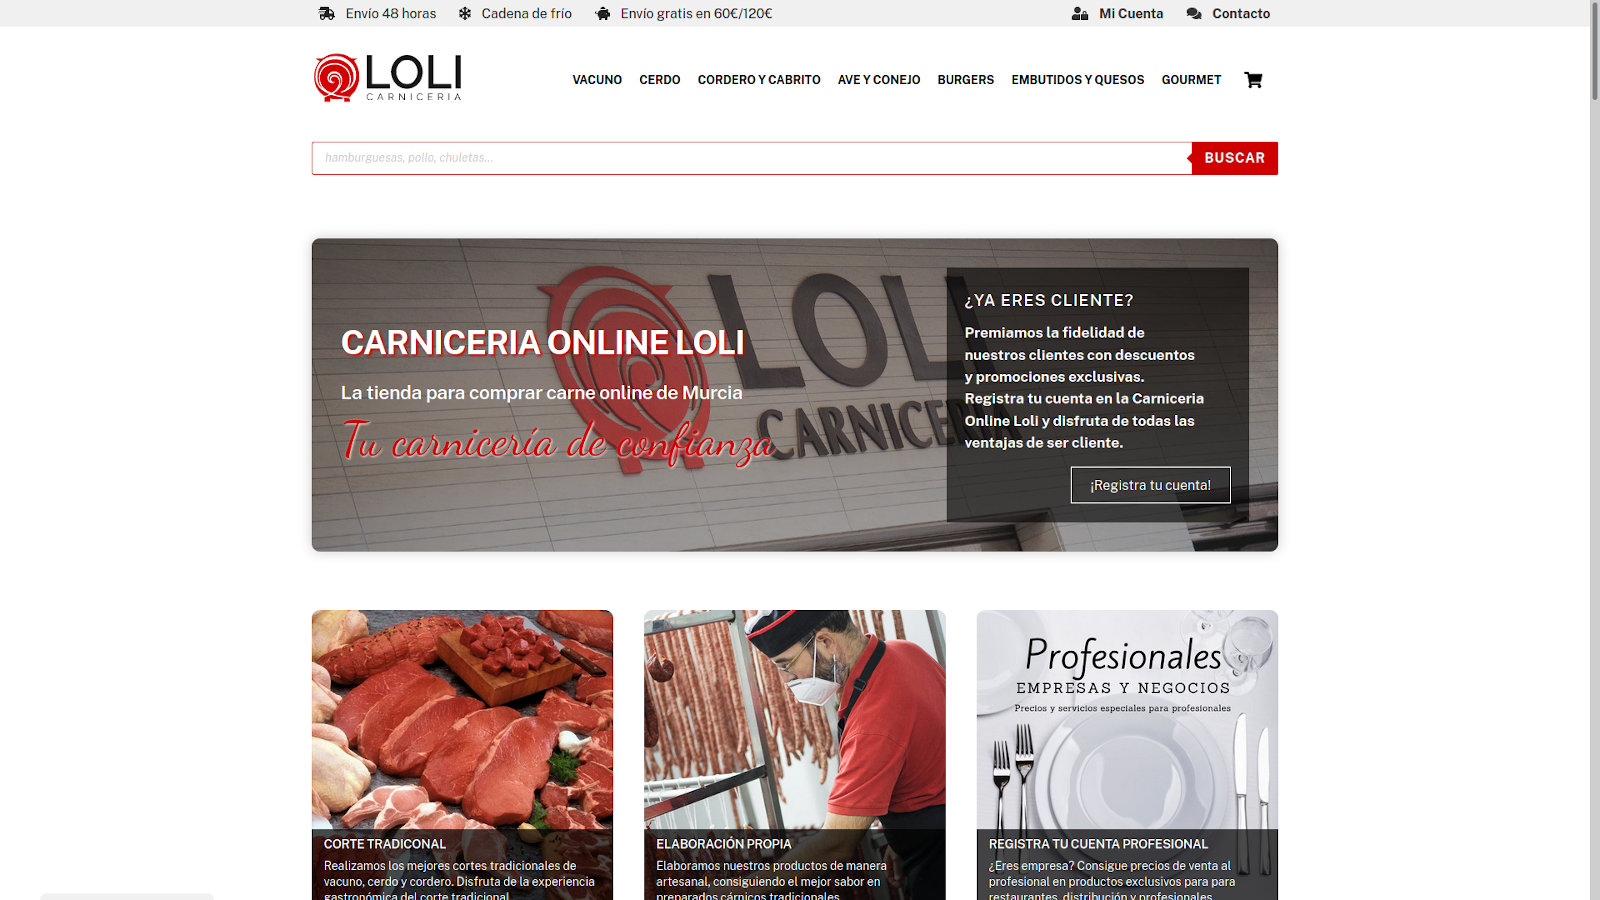 Carnicería Loli. Diseño de tienda online en Murcia